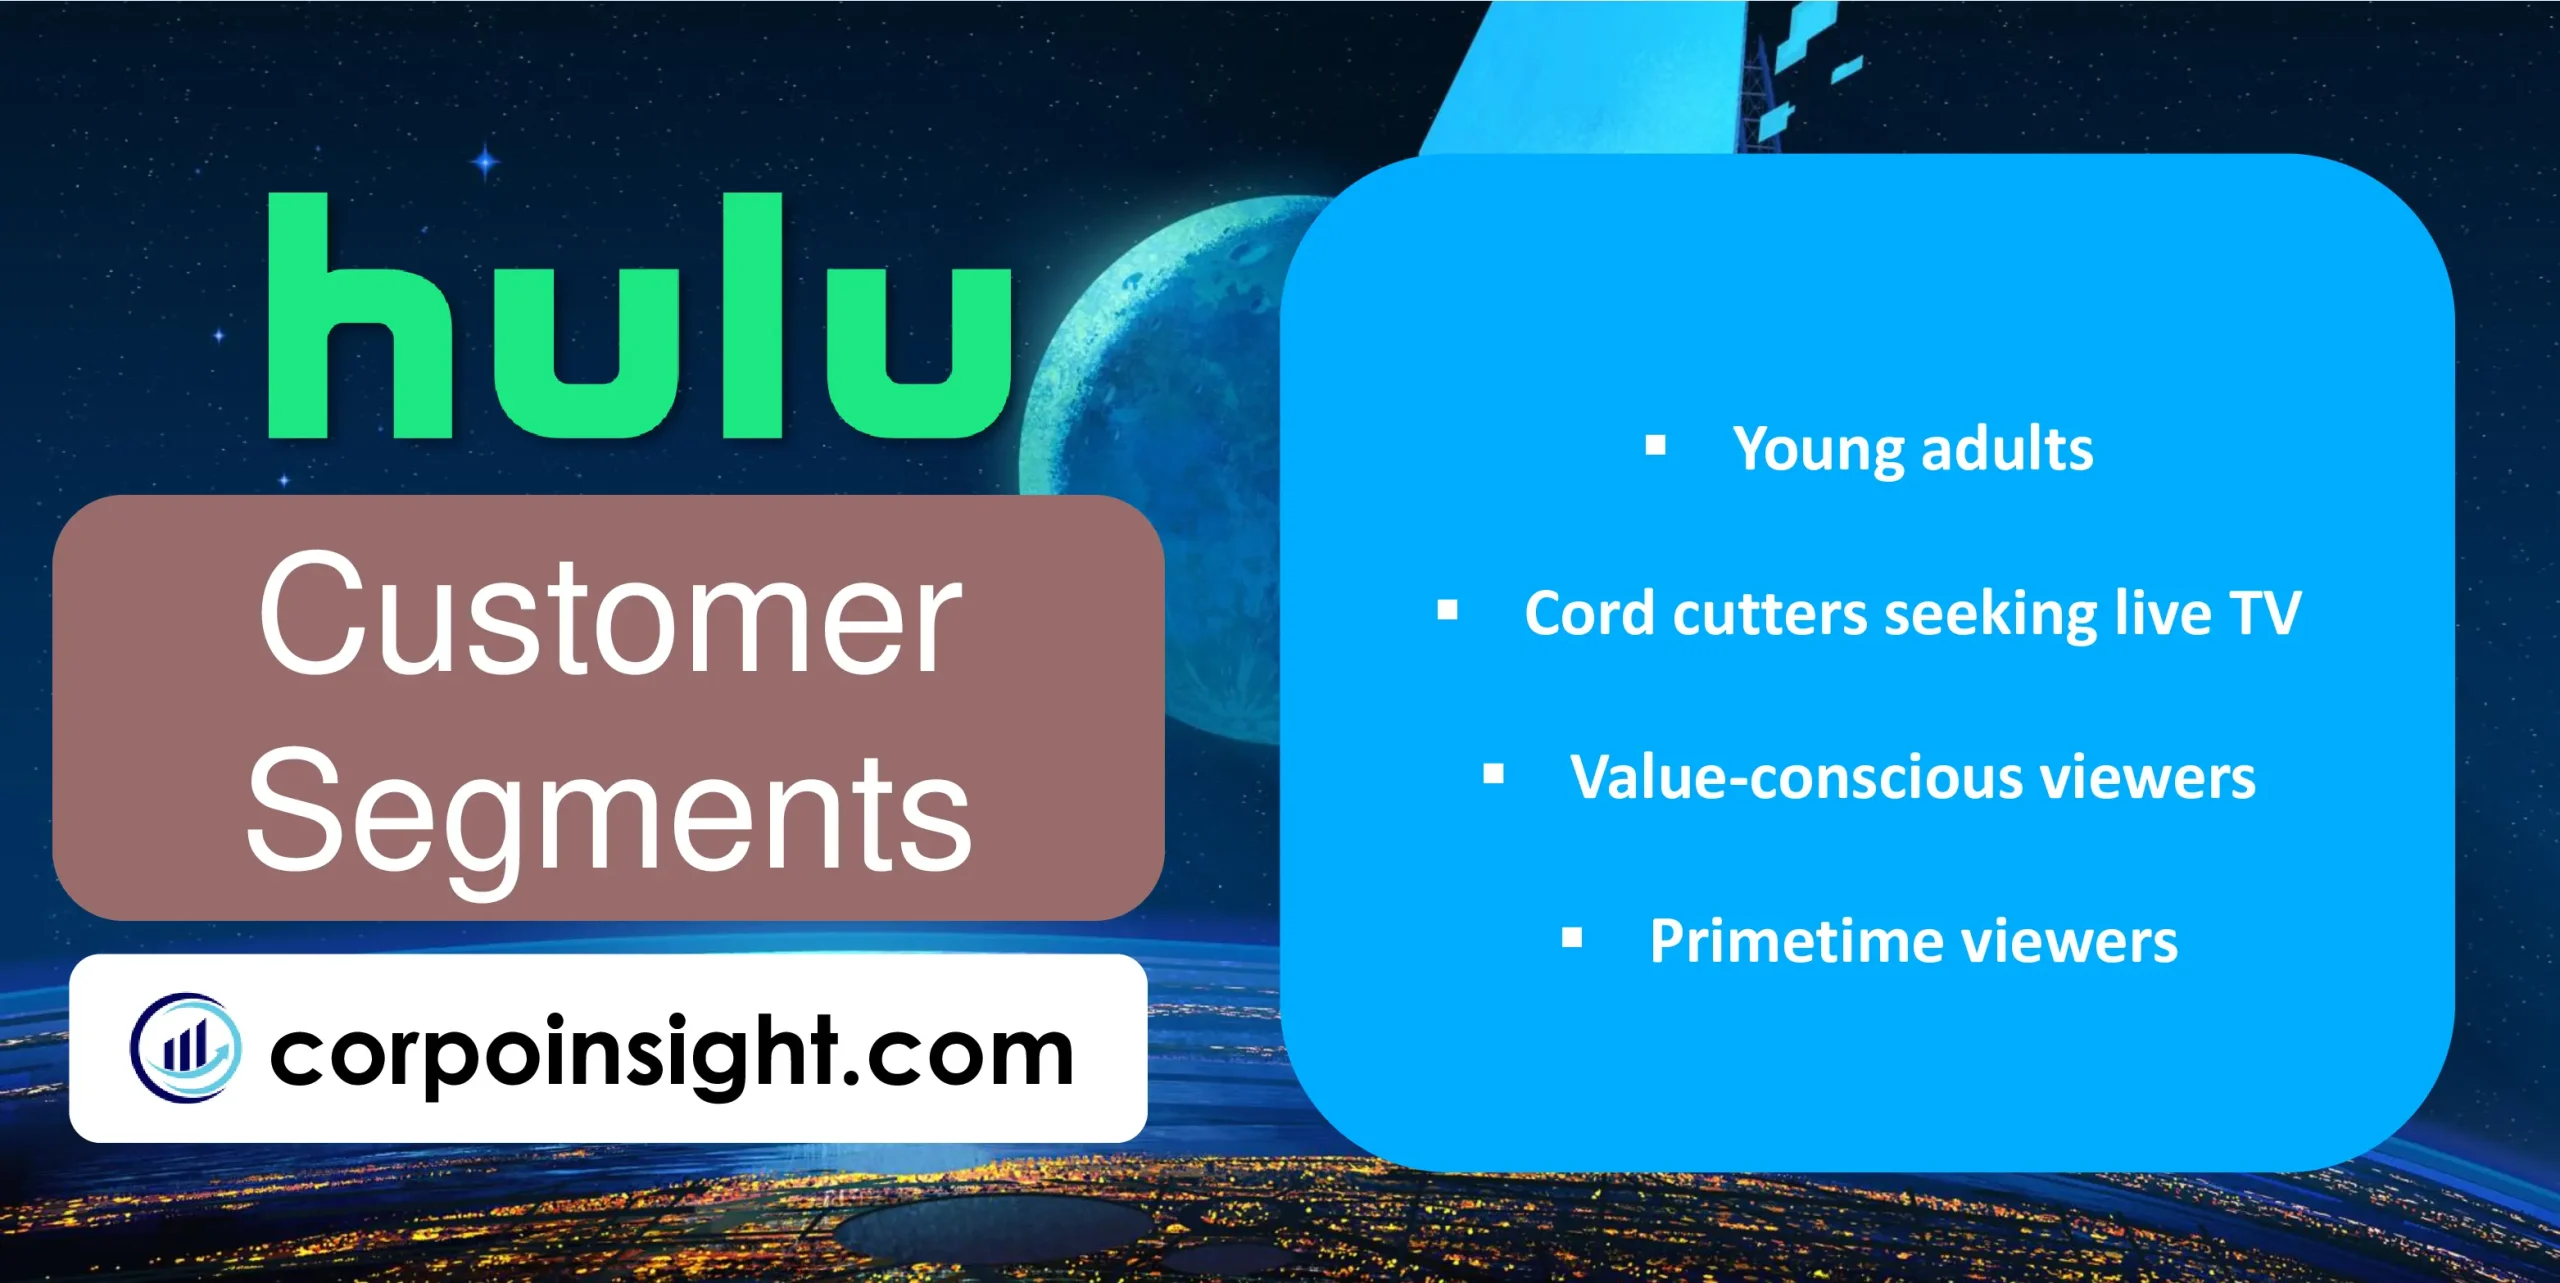 Customer Segments of Hulu